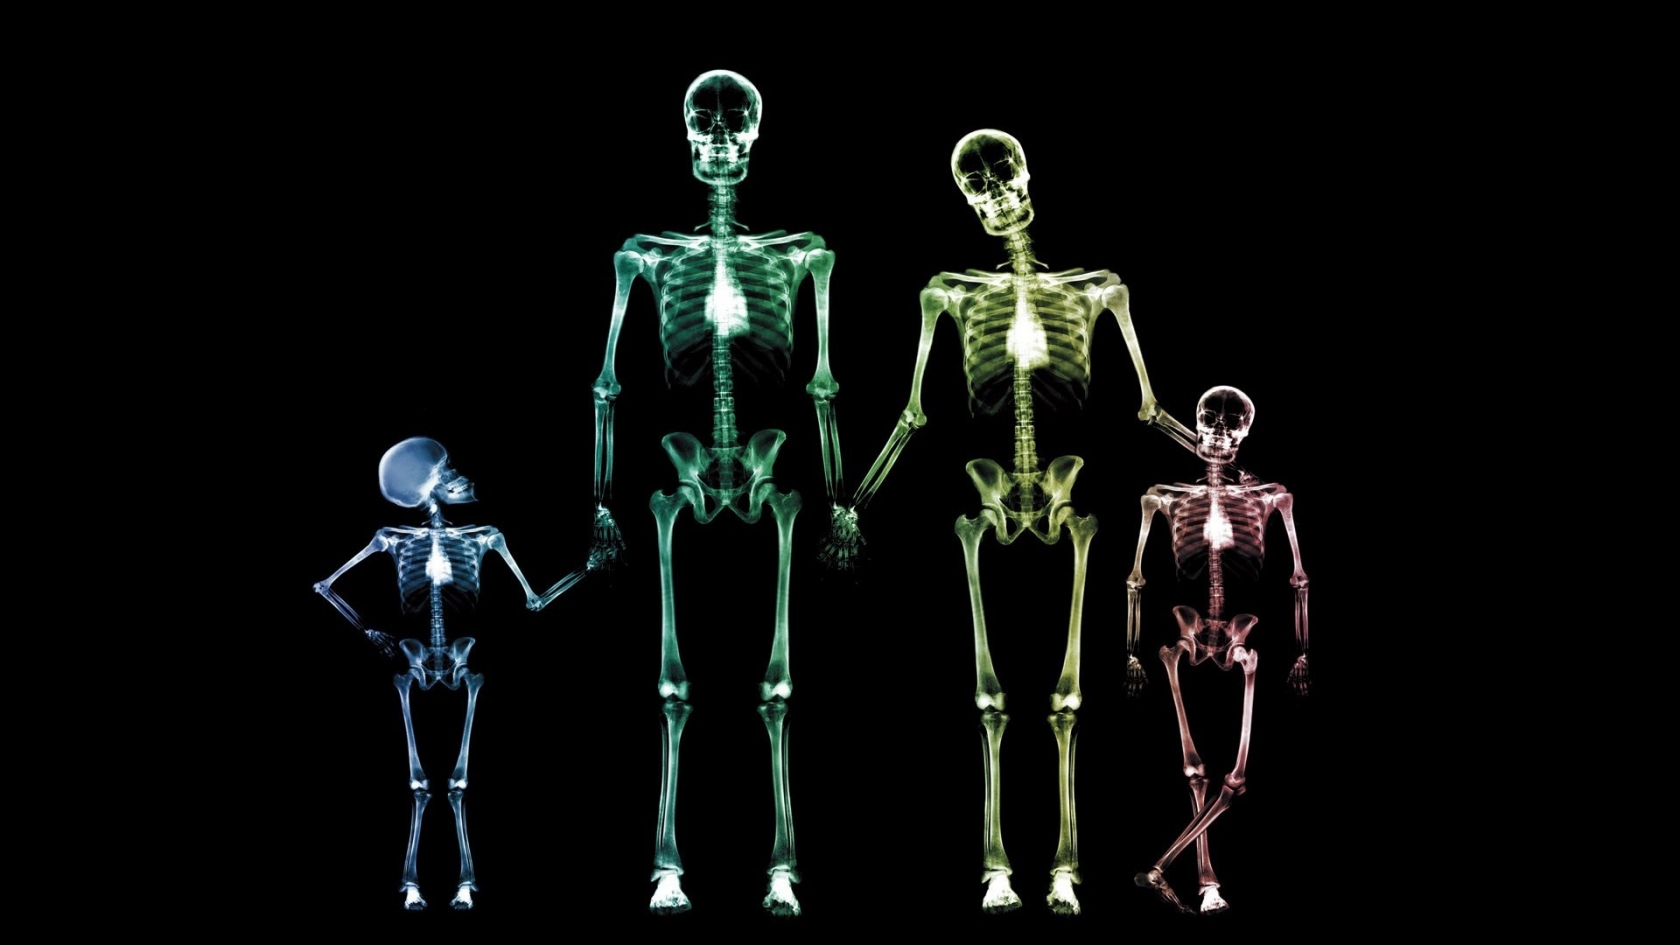 Family Skeletons for 1680 x 945 HDTV resolution